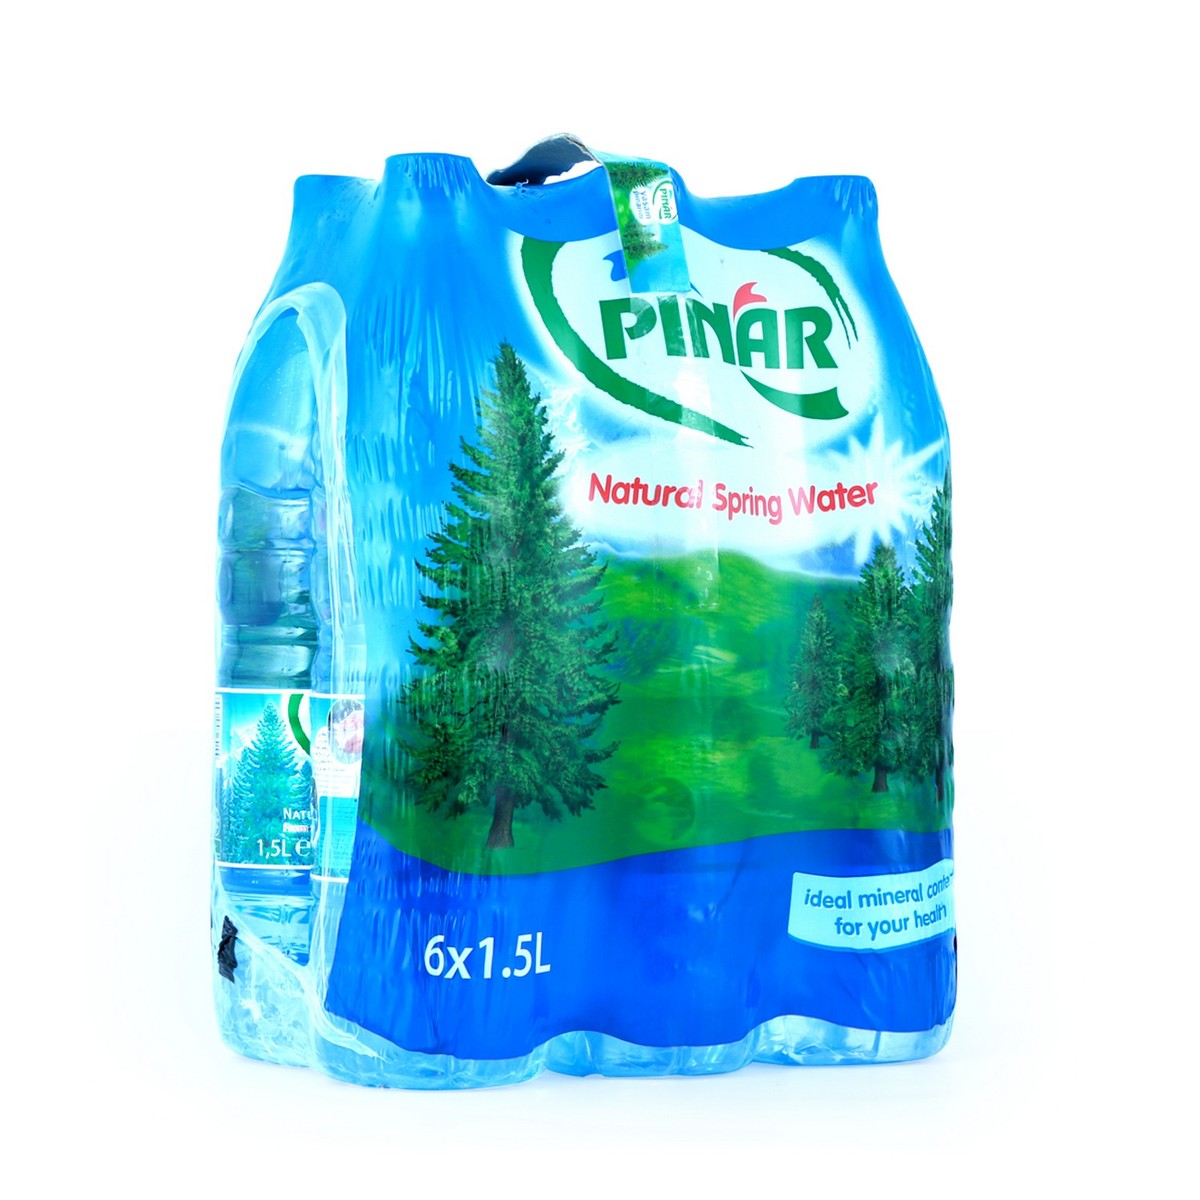 Pinar Natural Spring Water 6 x1.5L